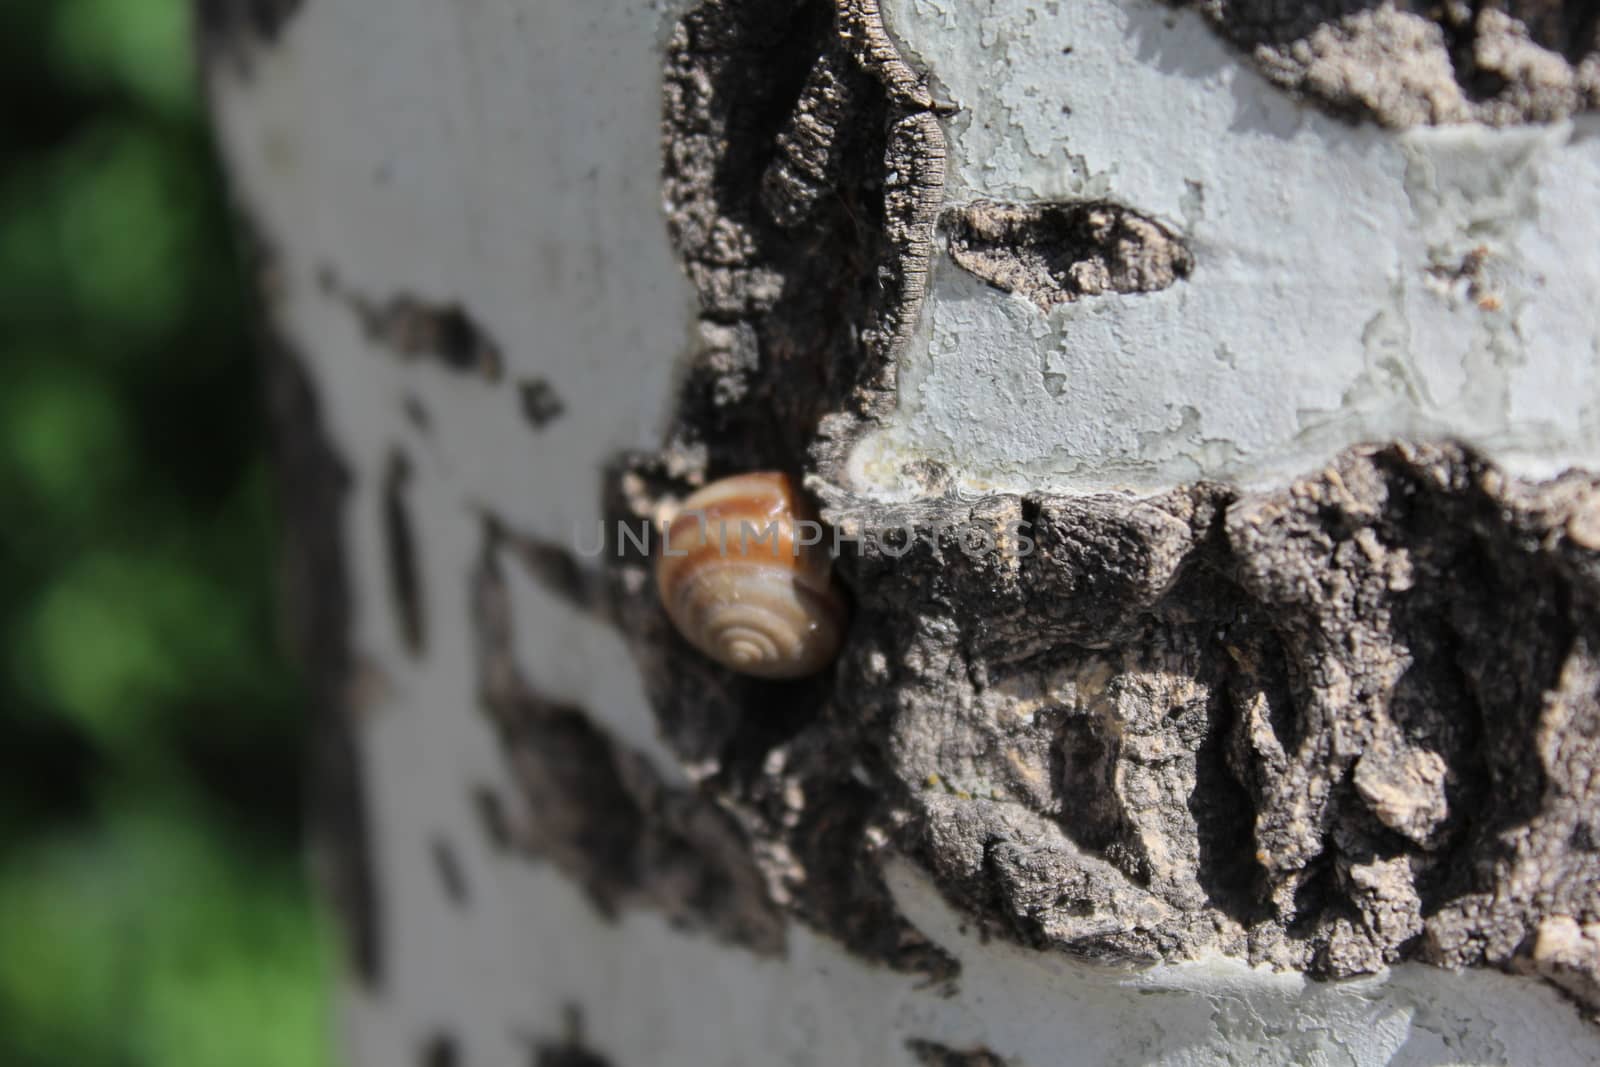 Snail in tree. by nurjan100